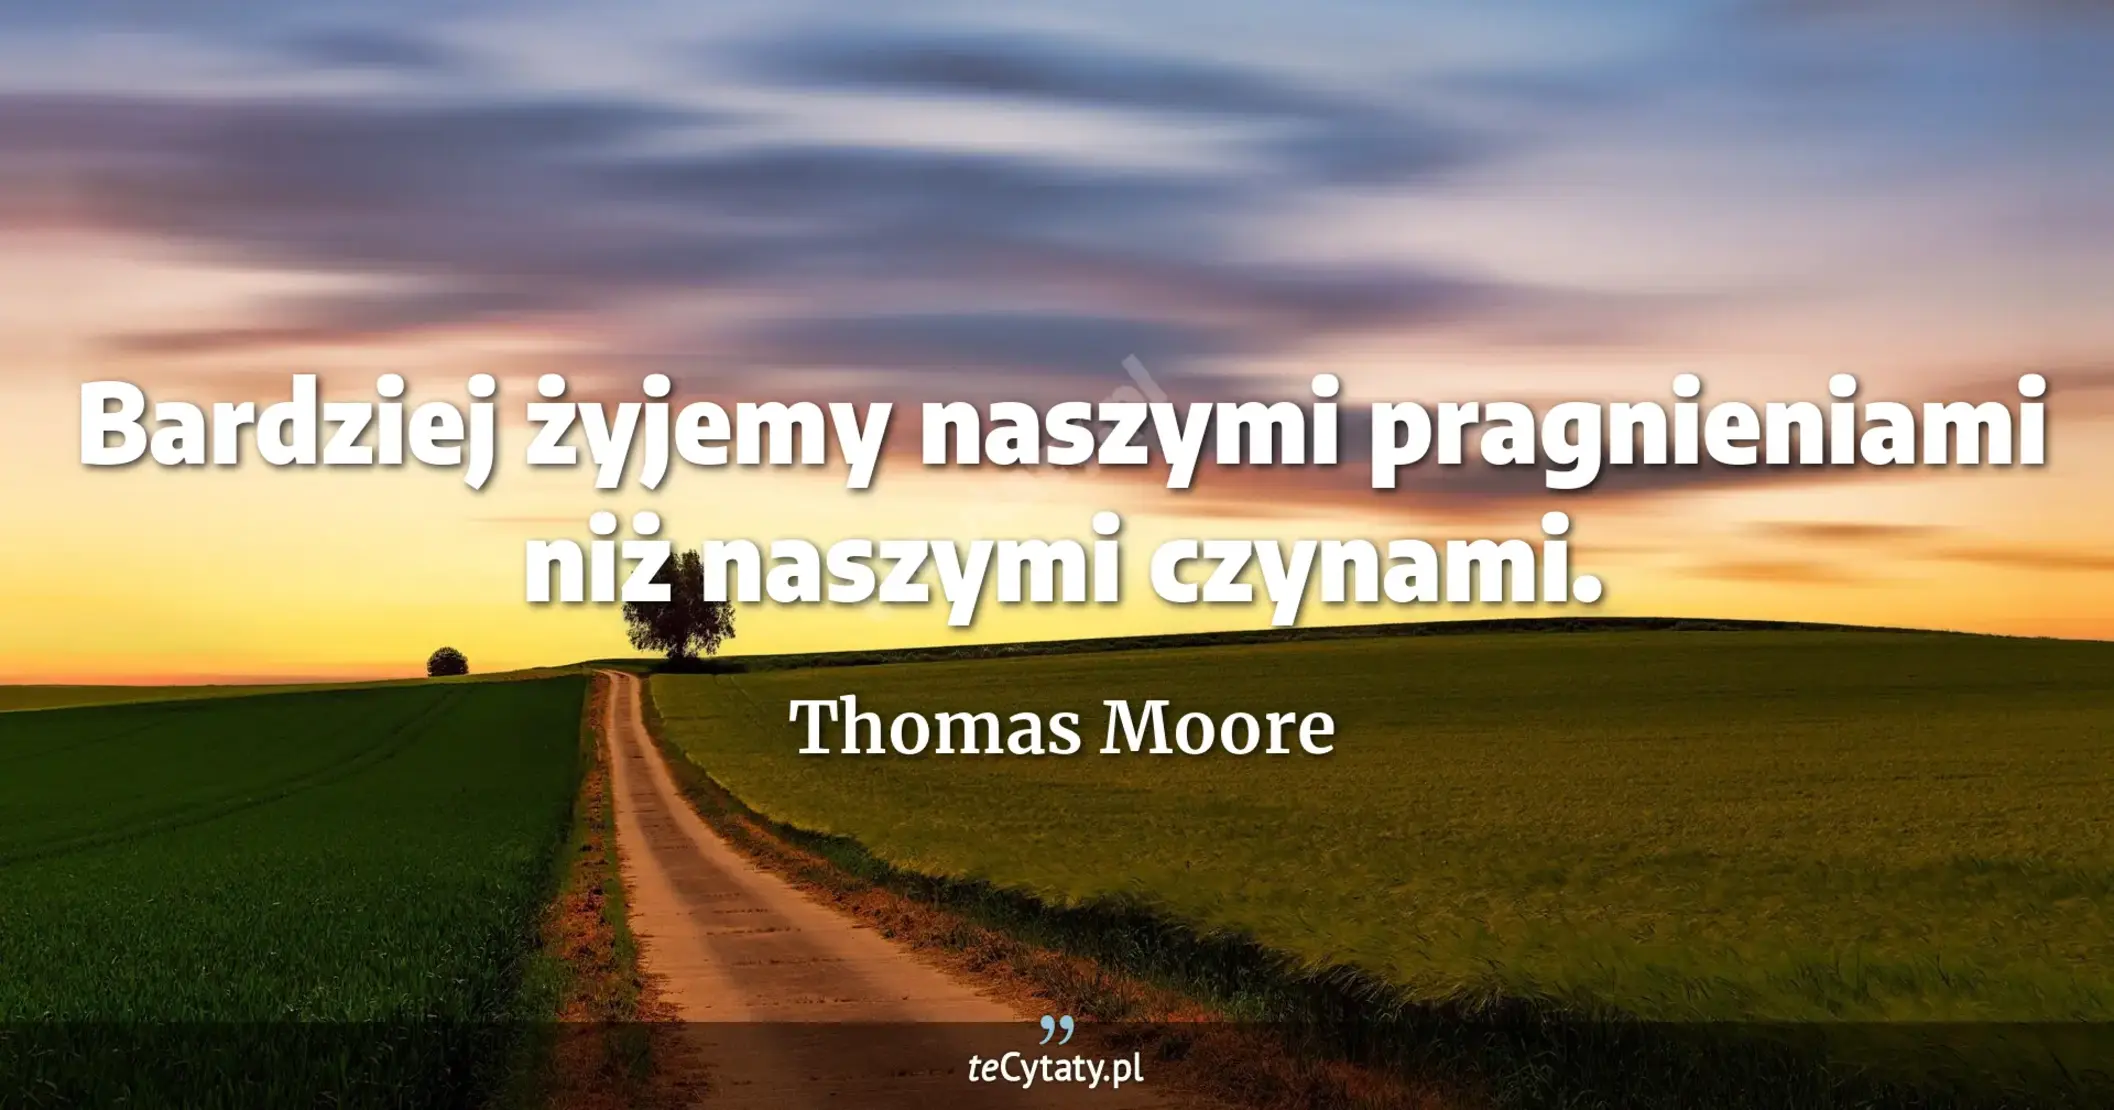 Bardziej żyjemy naszymi pragnieniami niż naszymi czynami. - Thomas Moore